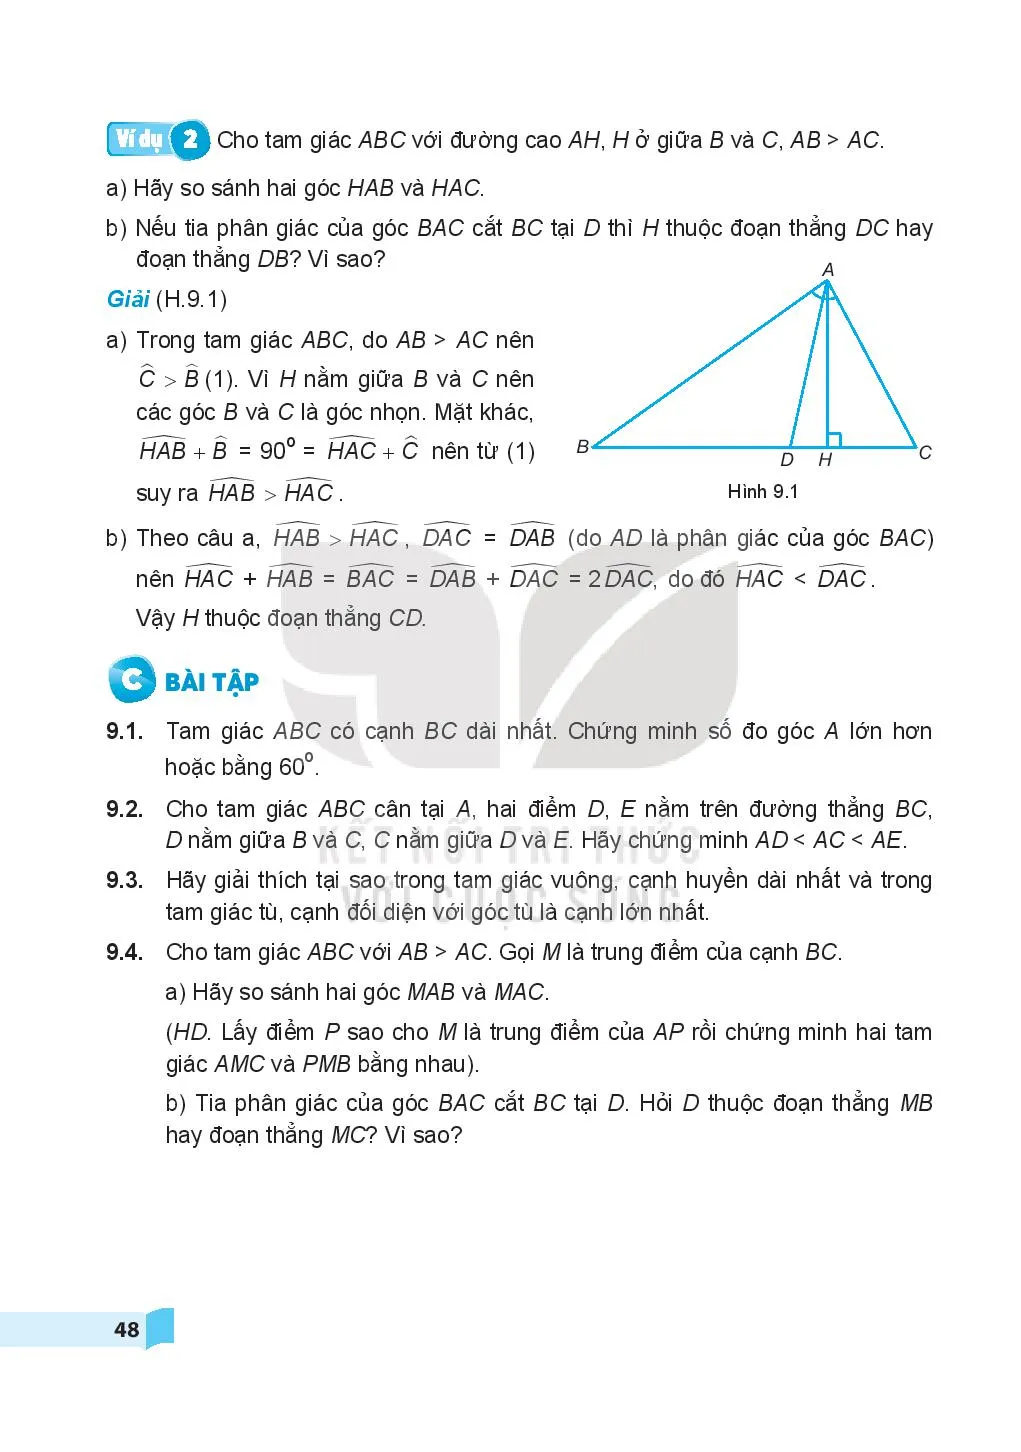 Bài 31. Quan hệ giữa góc và cạnh đối diện trong một tam giác